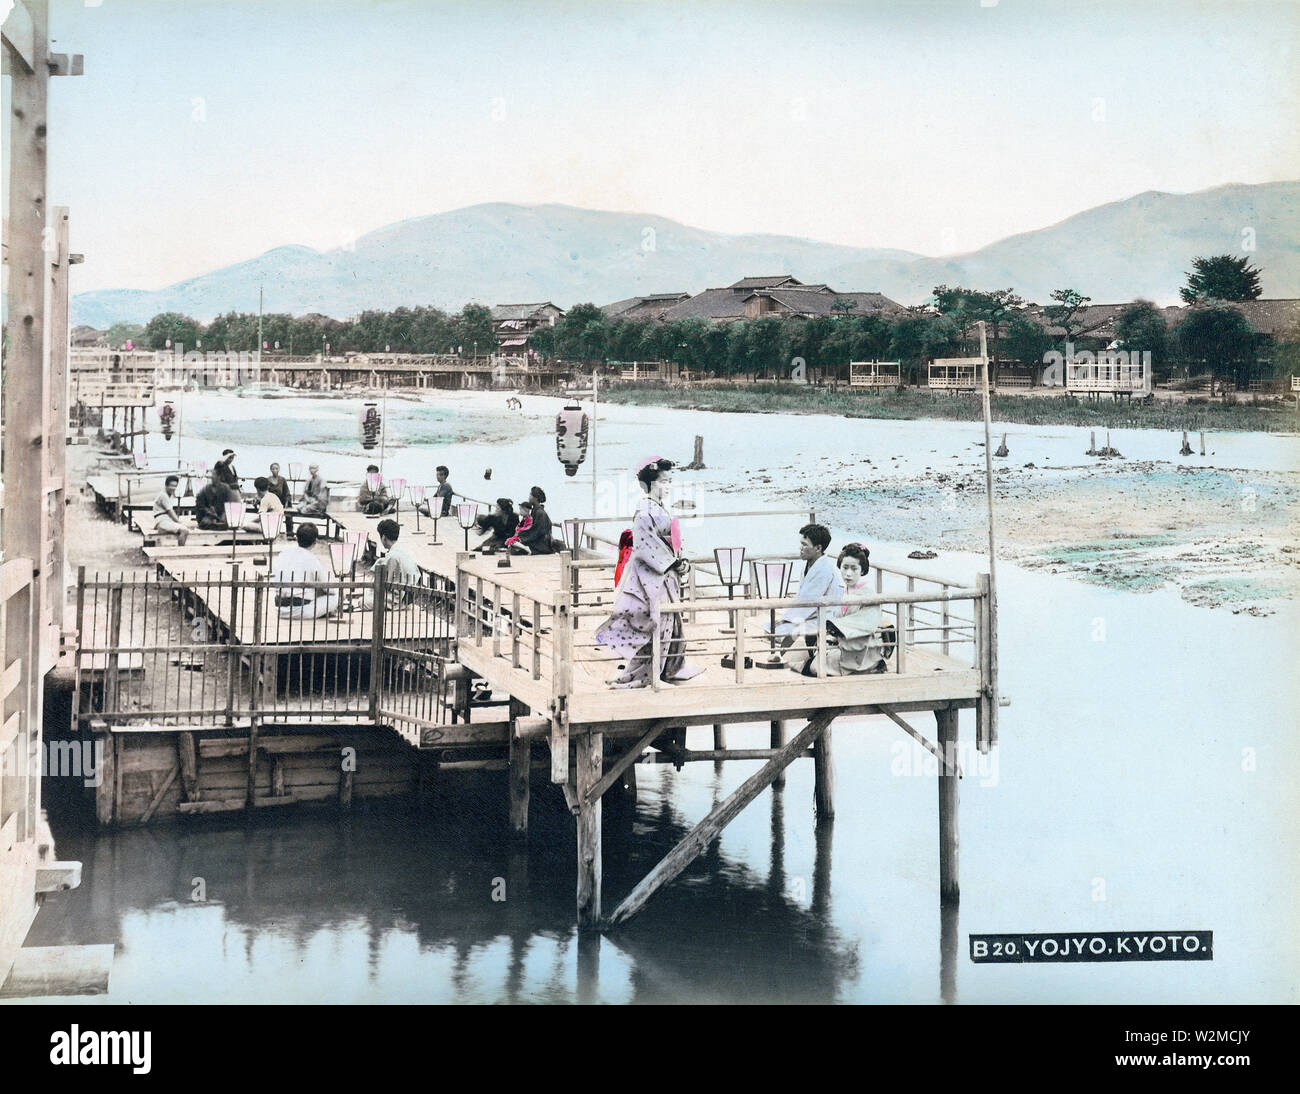 [1880s Japan - Unterhaltung Plattformen, die auf dem Fluss Kamogawa, Kyoto] - Menschen entspannend auf noryo Yuka (Sommer) von Restaurants entlang der Fluss Kamogawa, in Shijo, Kyoto, Ca. In den 1880ern. 19 Vintage albumen Foto. Stockfoto